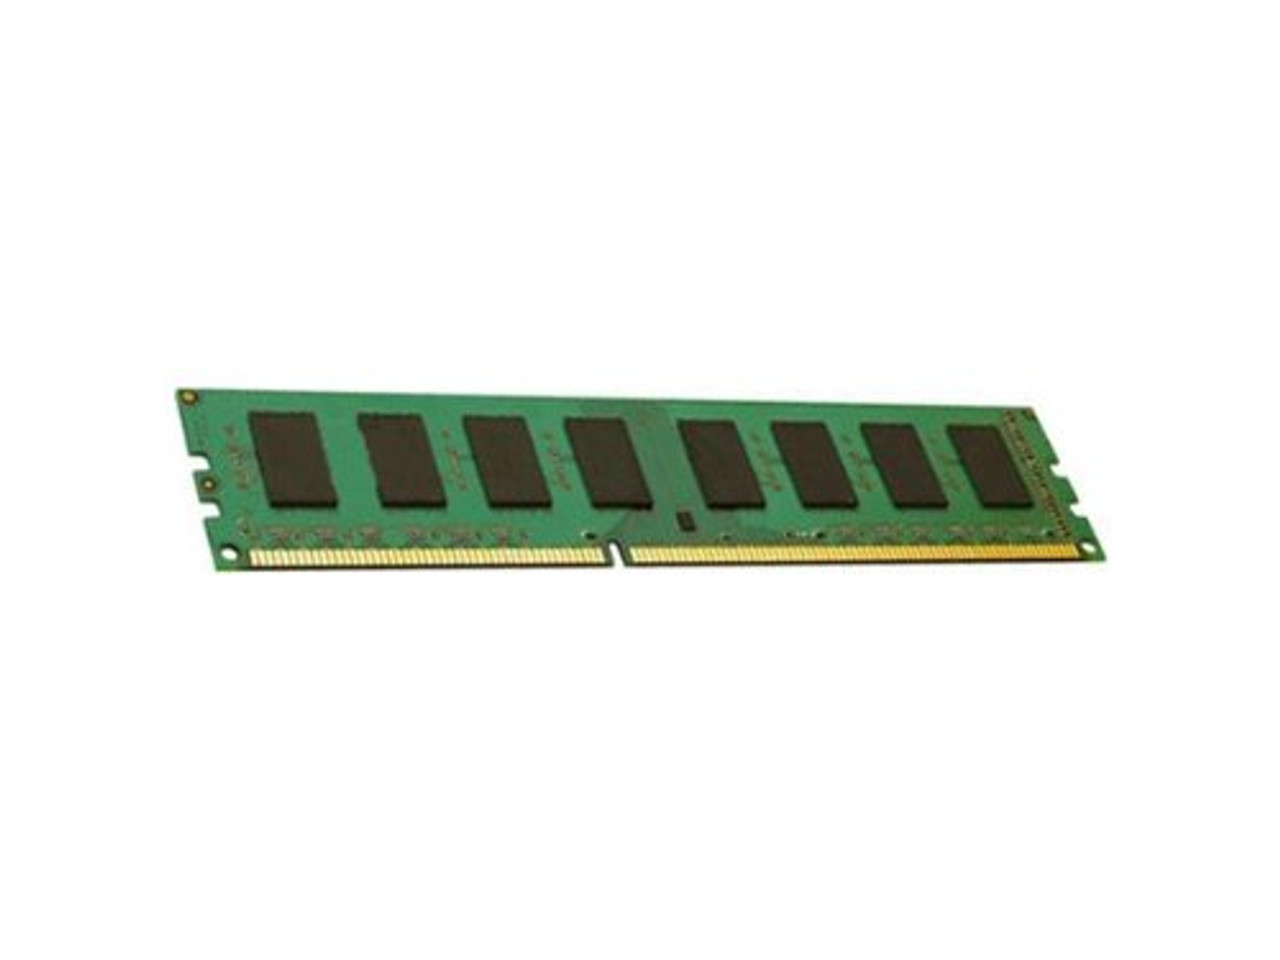 ENET 64GB DDR4 SDRAM Memory Module - P00926-B21-ENC